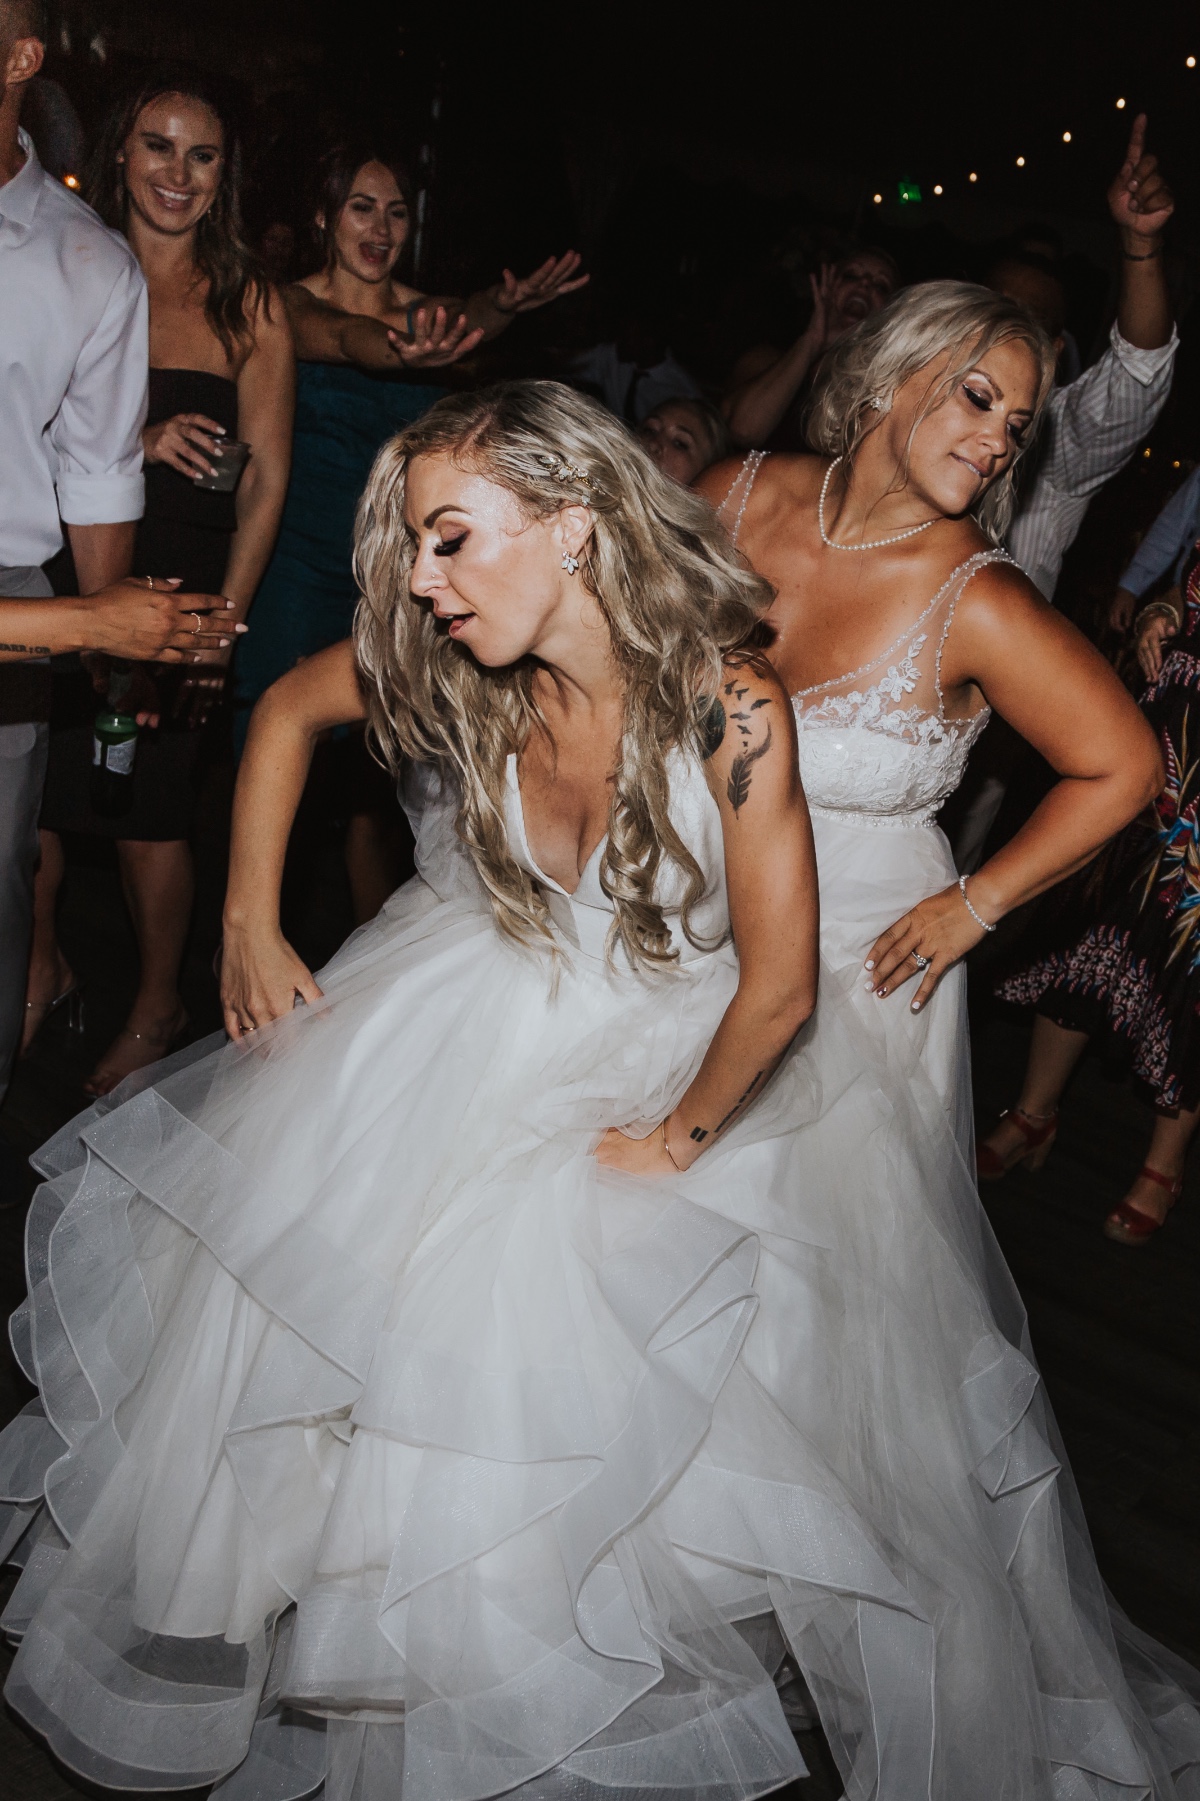 Bride wedding dancing